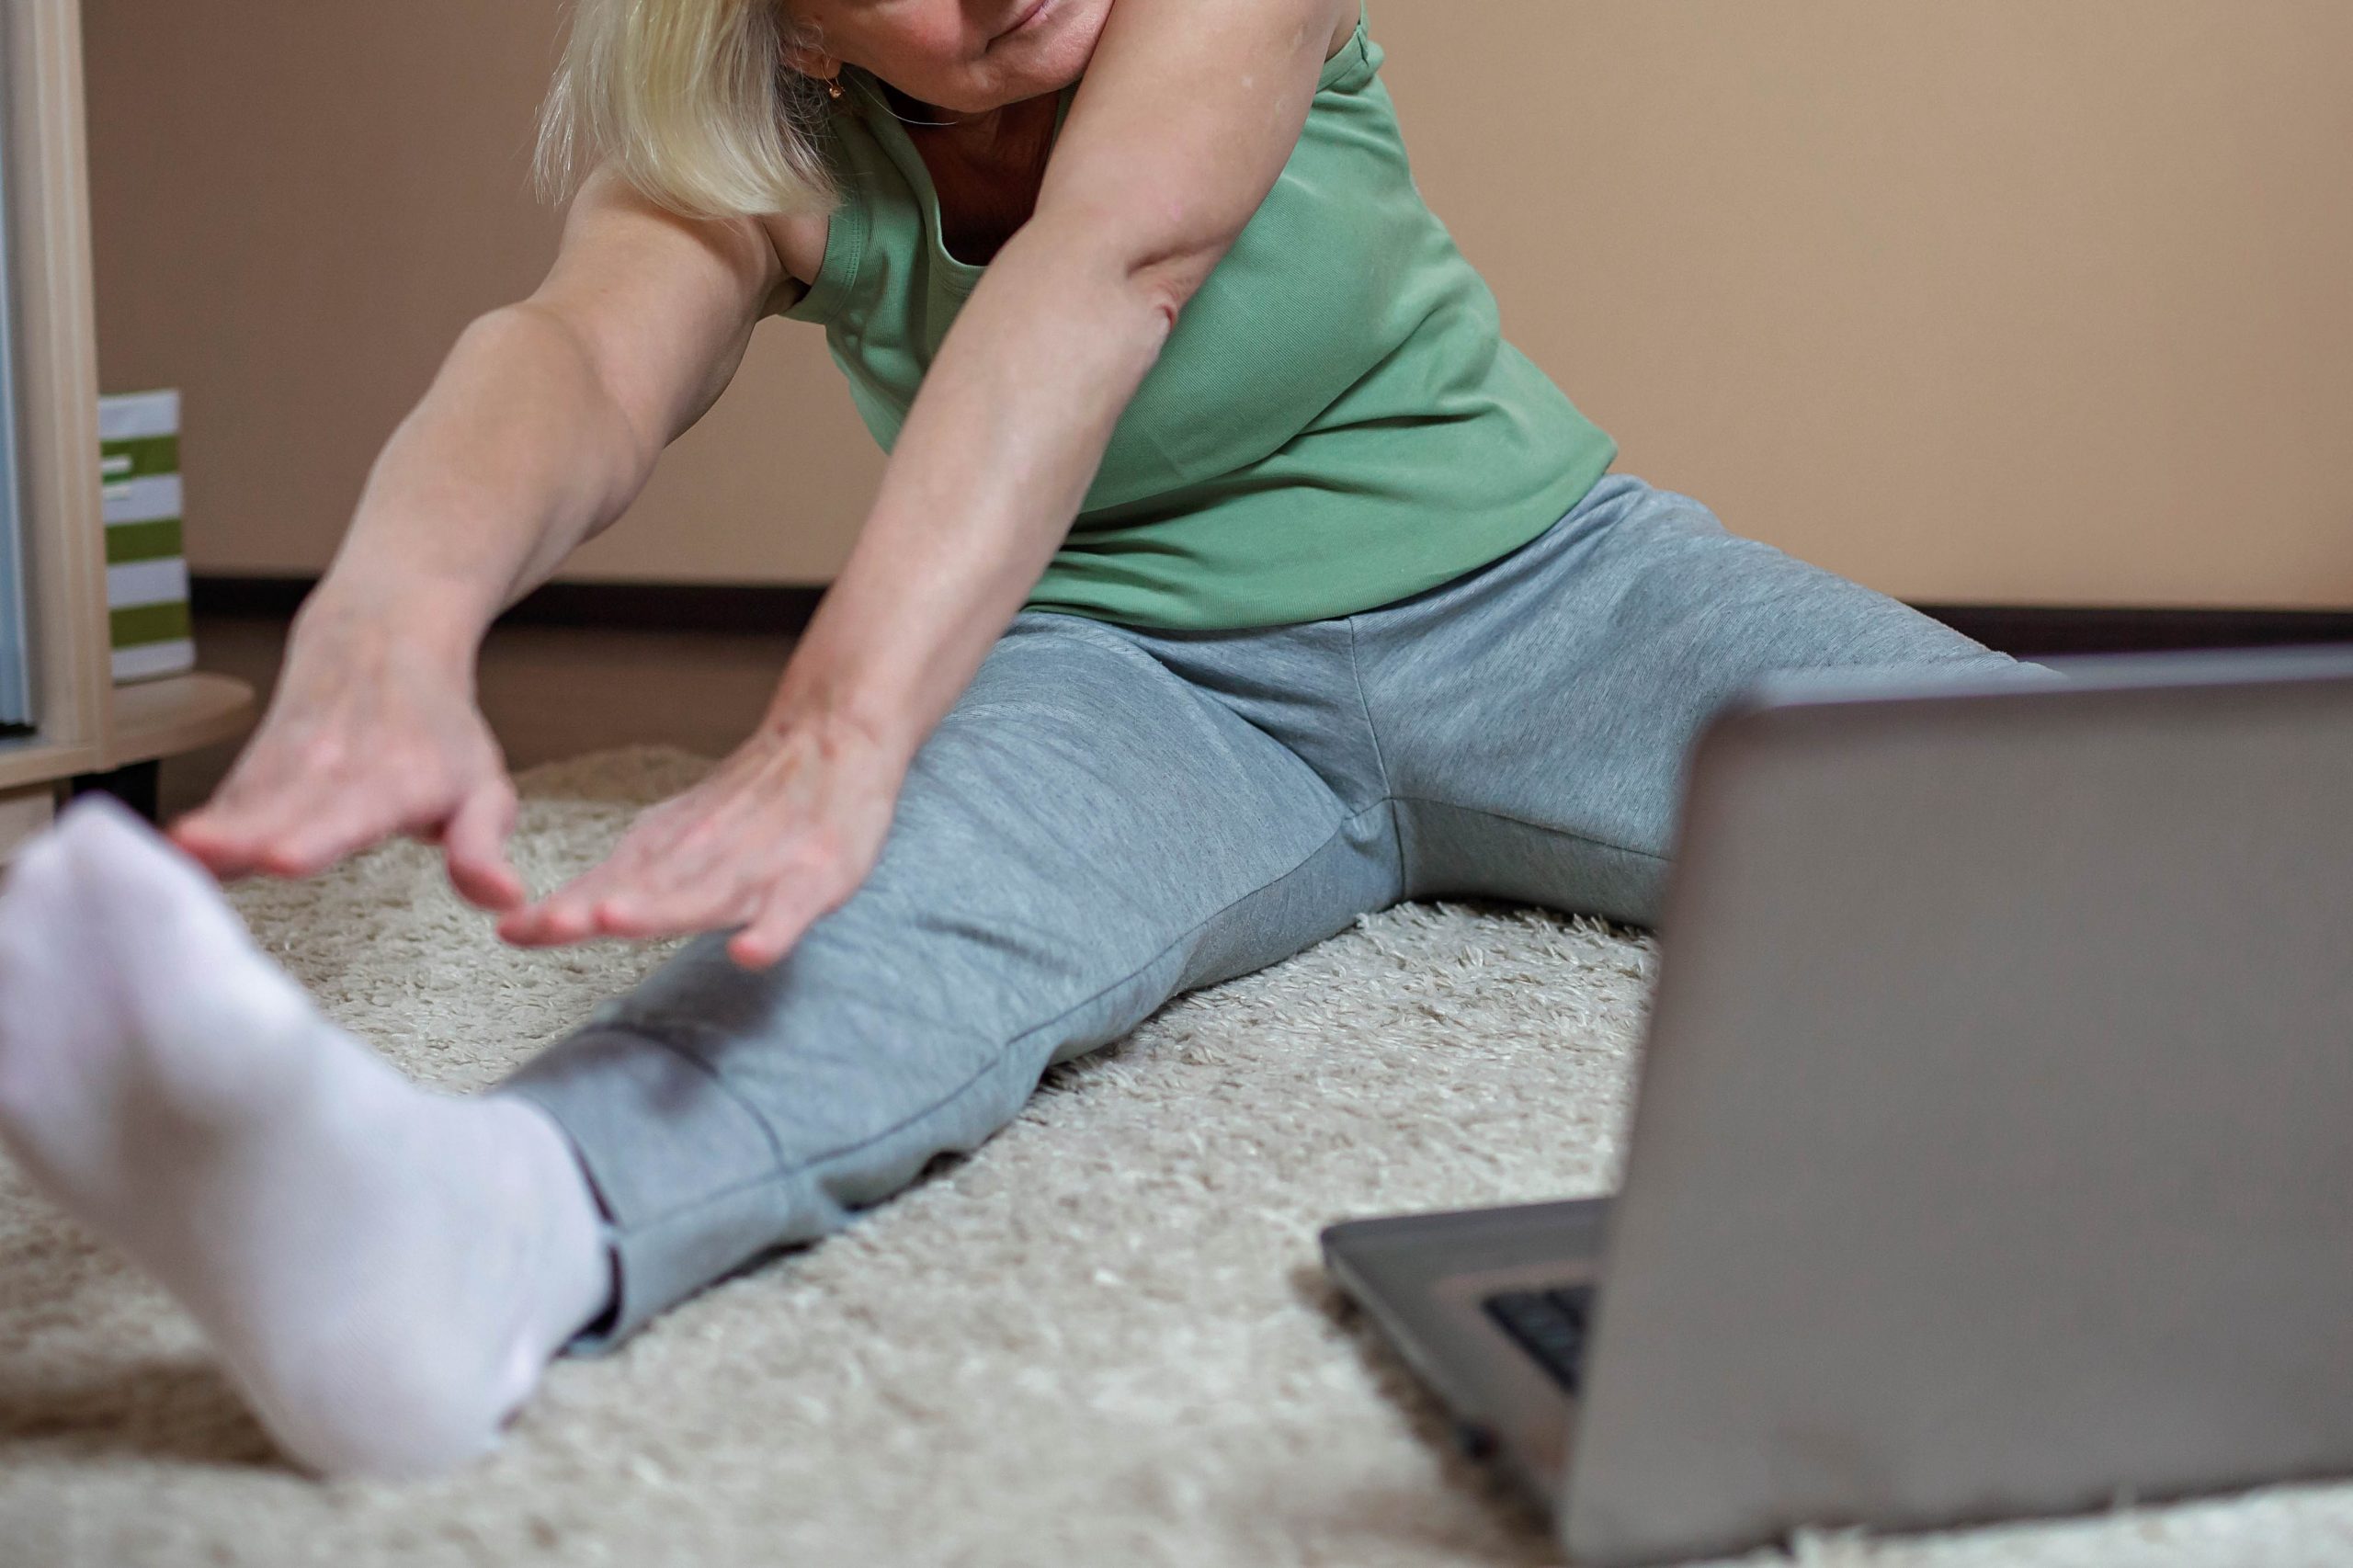 .אישה יושבת על שטיח ומחקה פעילות גופנית שיש במחשב הנייד שמולה. האישה יושבת בפיסוק ומותחת את שתי ידייה לכיוון אחת הרגליים